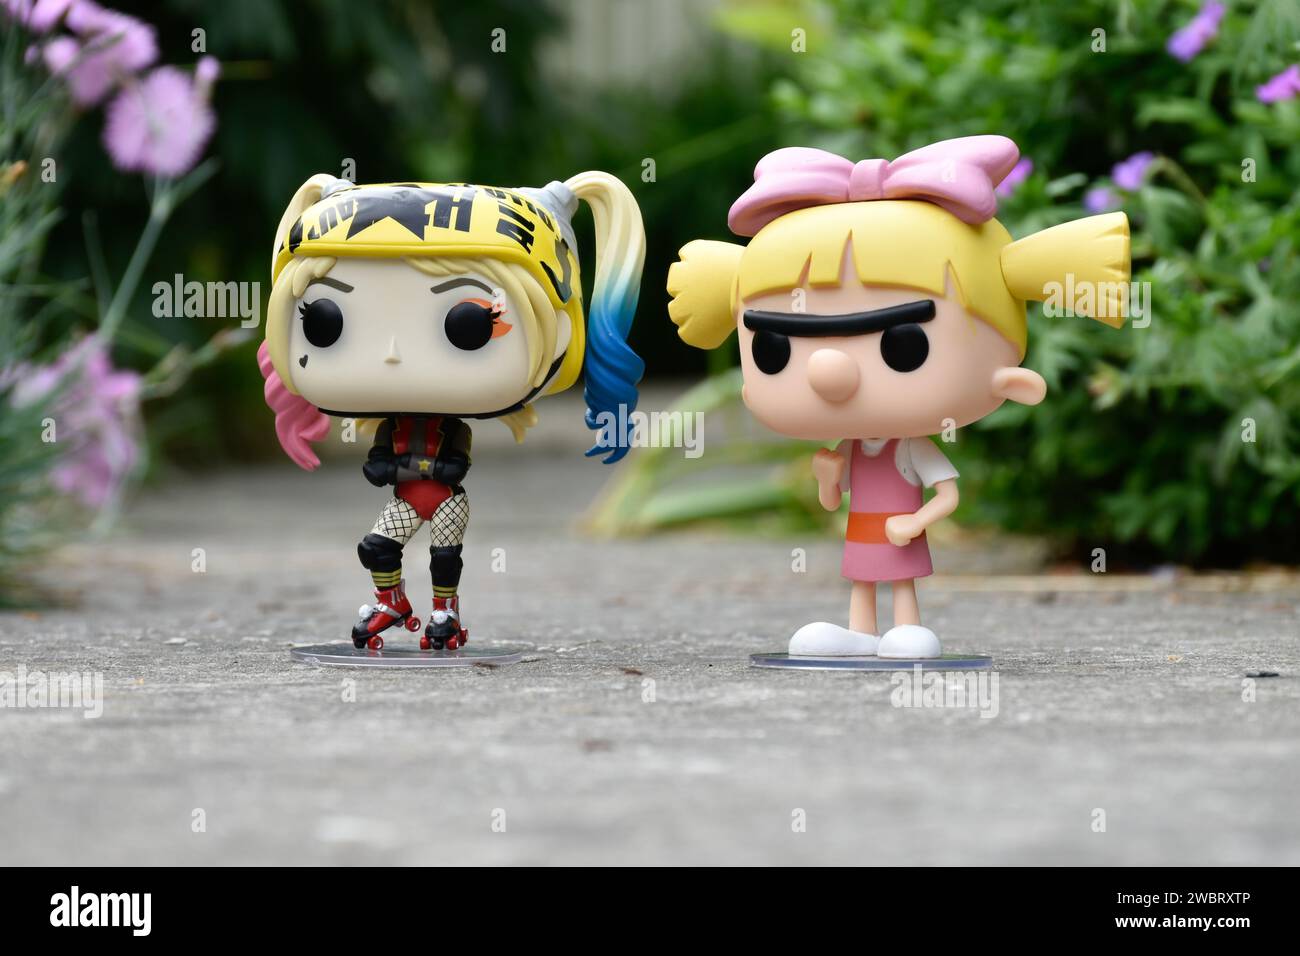 Funko Pop figurines d'action de DC comics super-héros Harley Quinn et Helga Pataki de la série télévisée d'animation Nickelodeon Hey Arnold. Route asphaltée, jardin. Banque D'Images